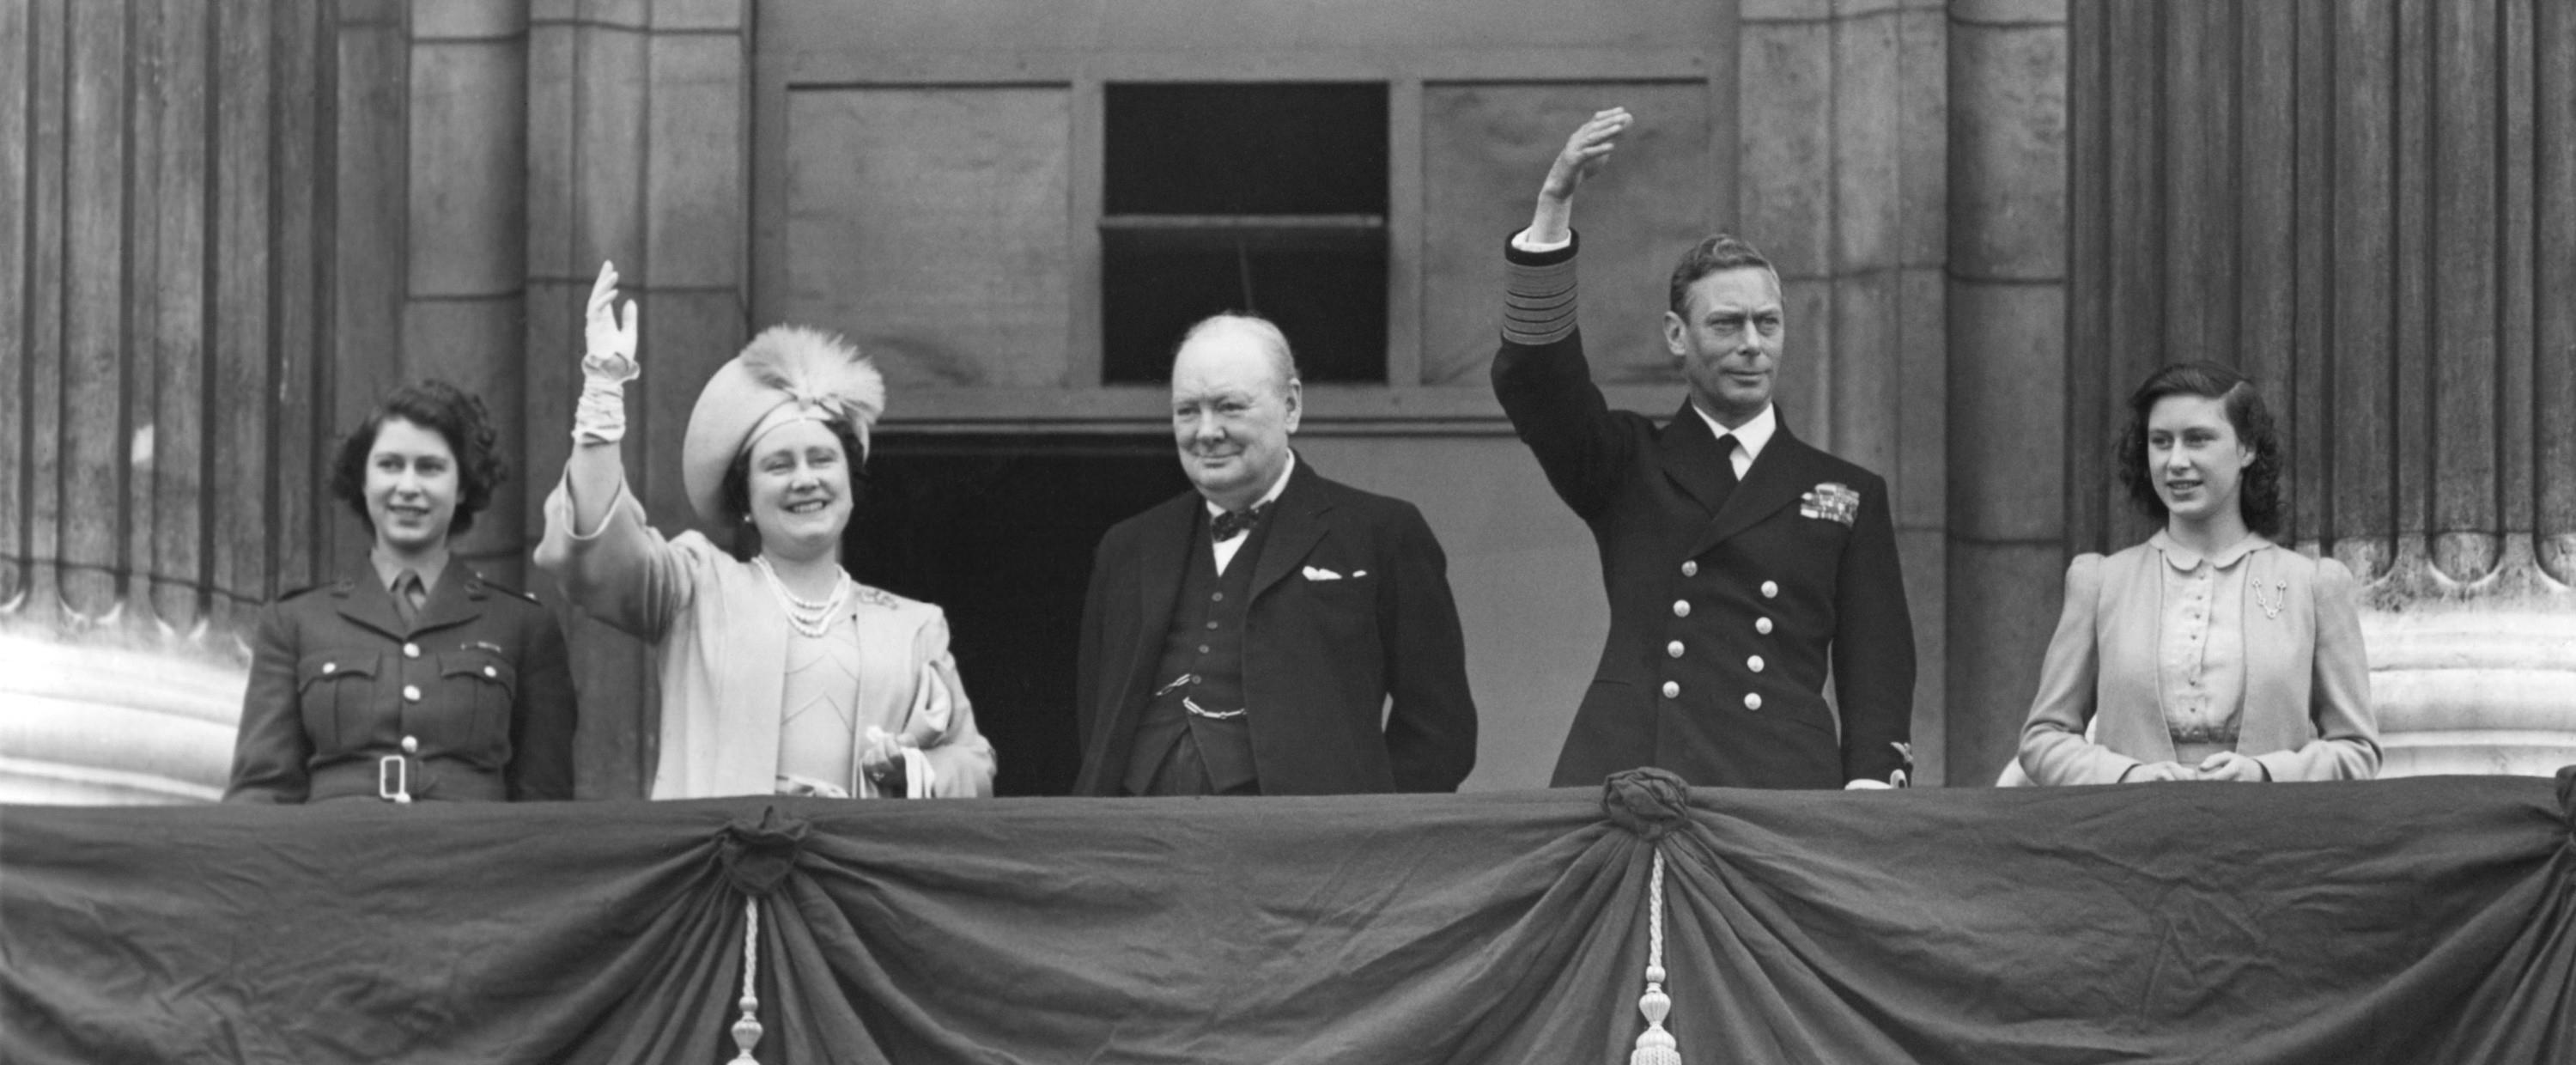 Dzień zwycięstwa rodzina królewska z premierem Churchillem na balkonie pałacu Buckingham. Londyn, 8 maja 1945 r.